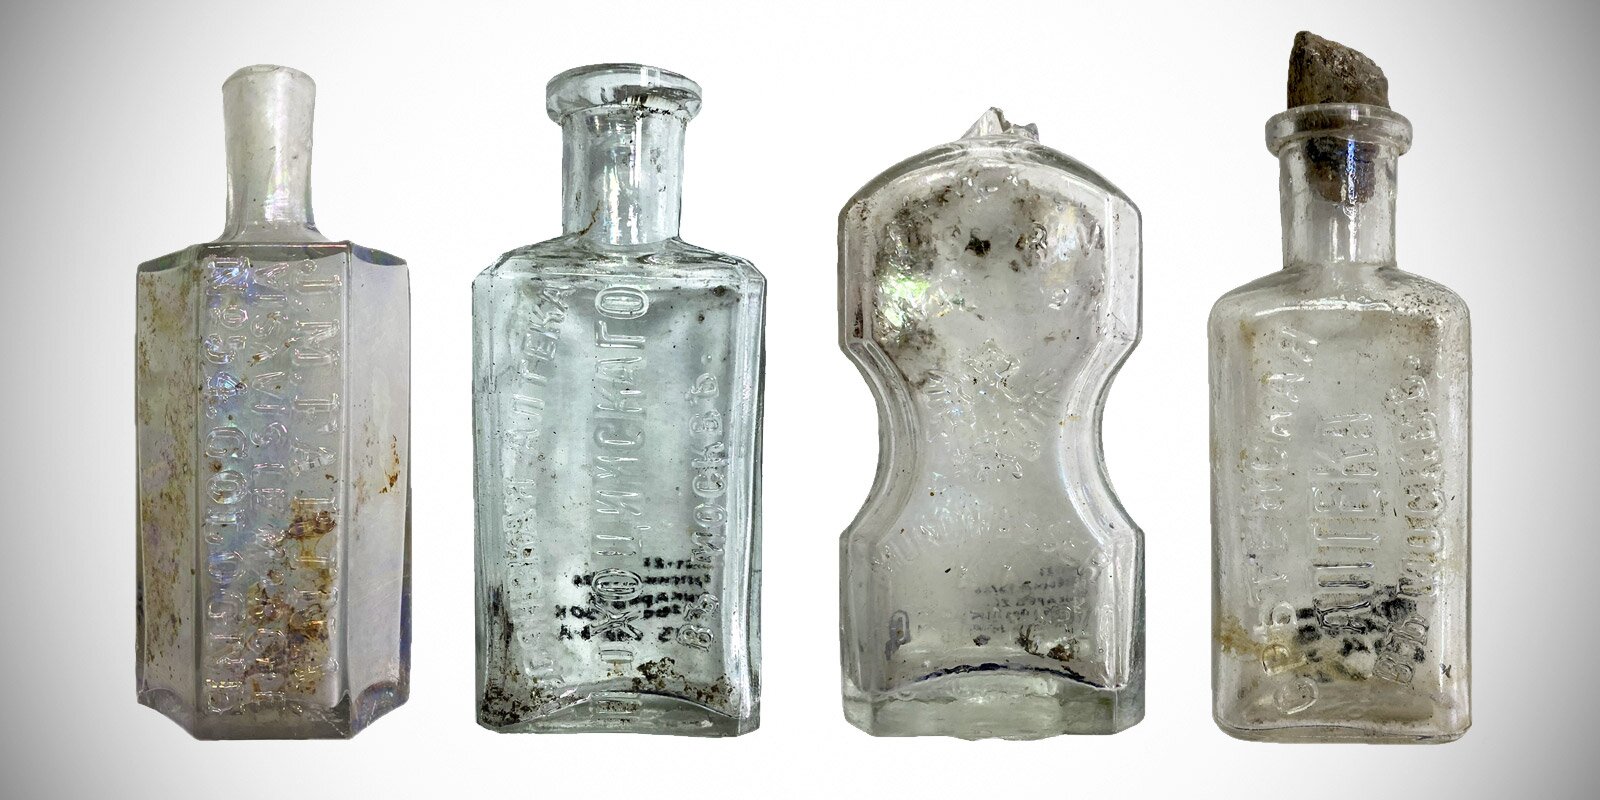 Аптечные склянки найденные в центре Москвы передадут в коллекцию музеев. Фото: сайт мэра Москвы